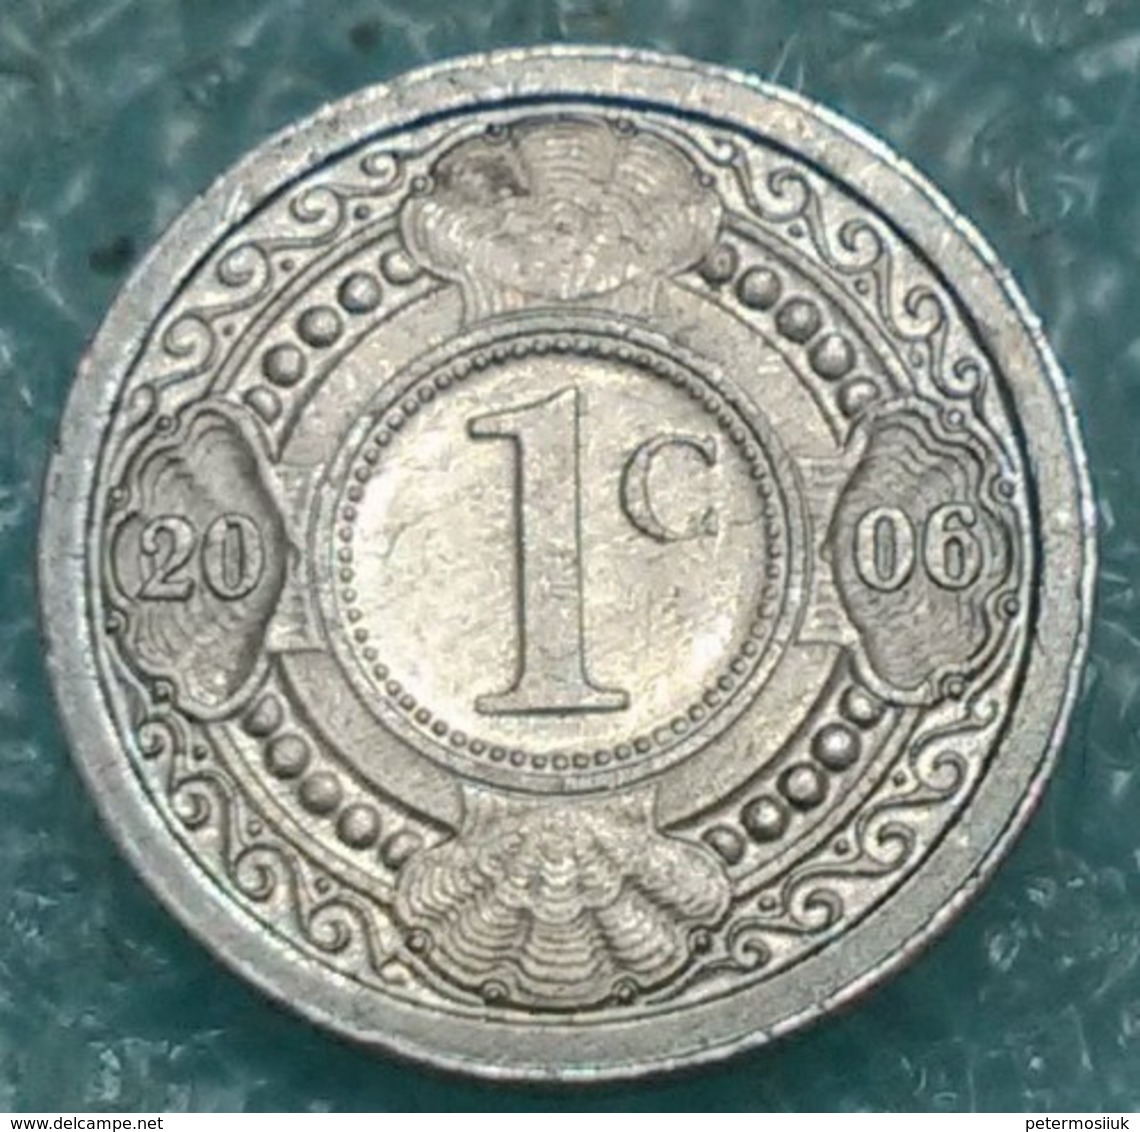 Netherlands Antilles 1 Cent, 2006 -4422 - Netherlands Antilles